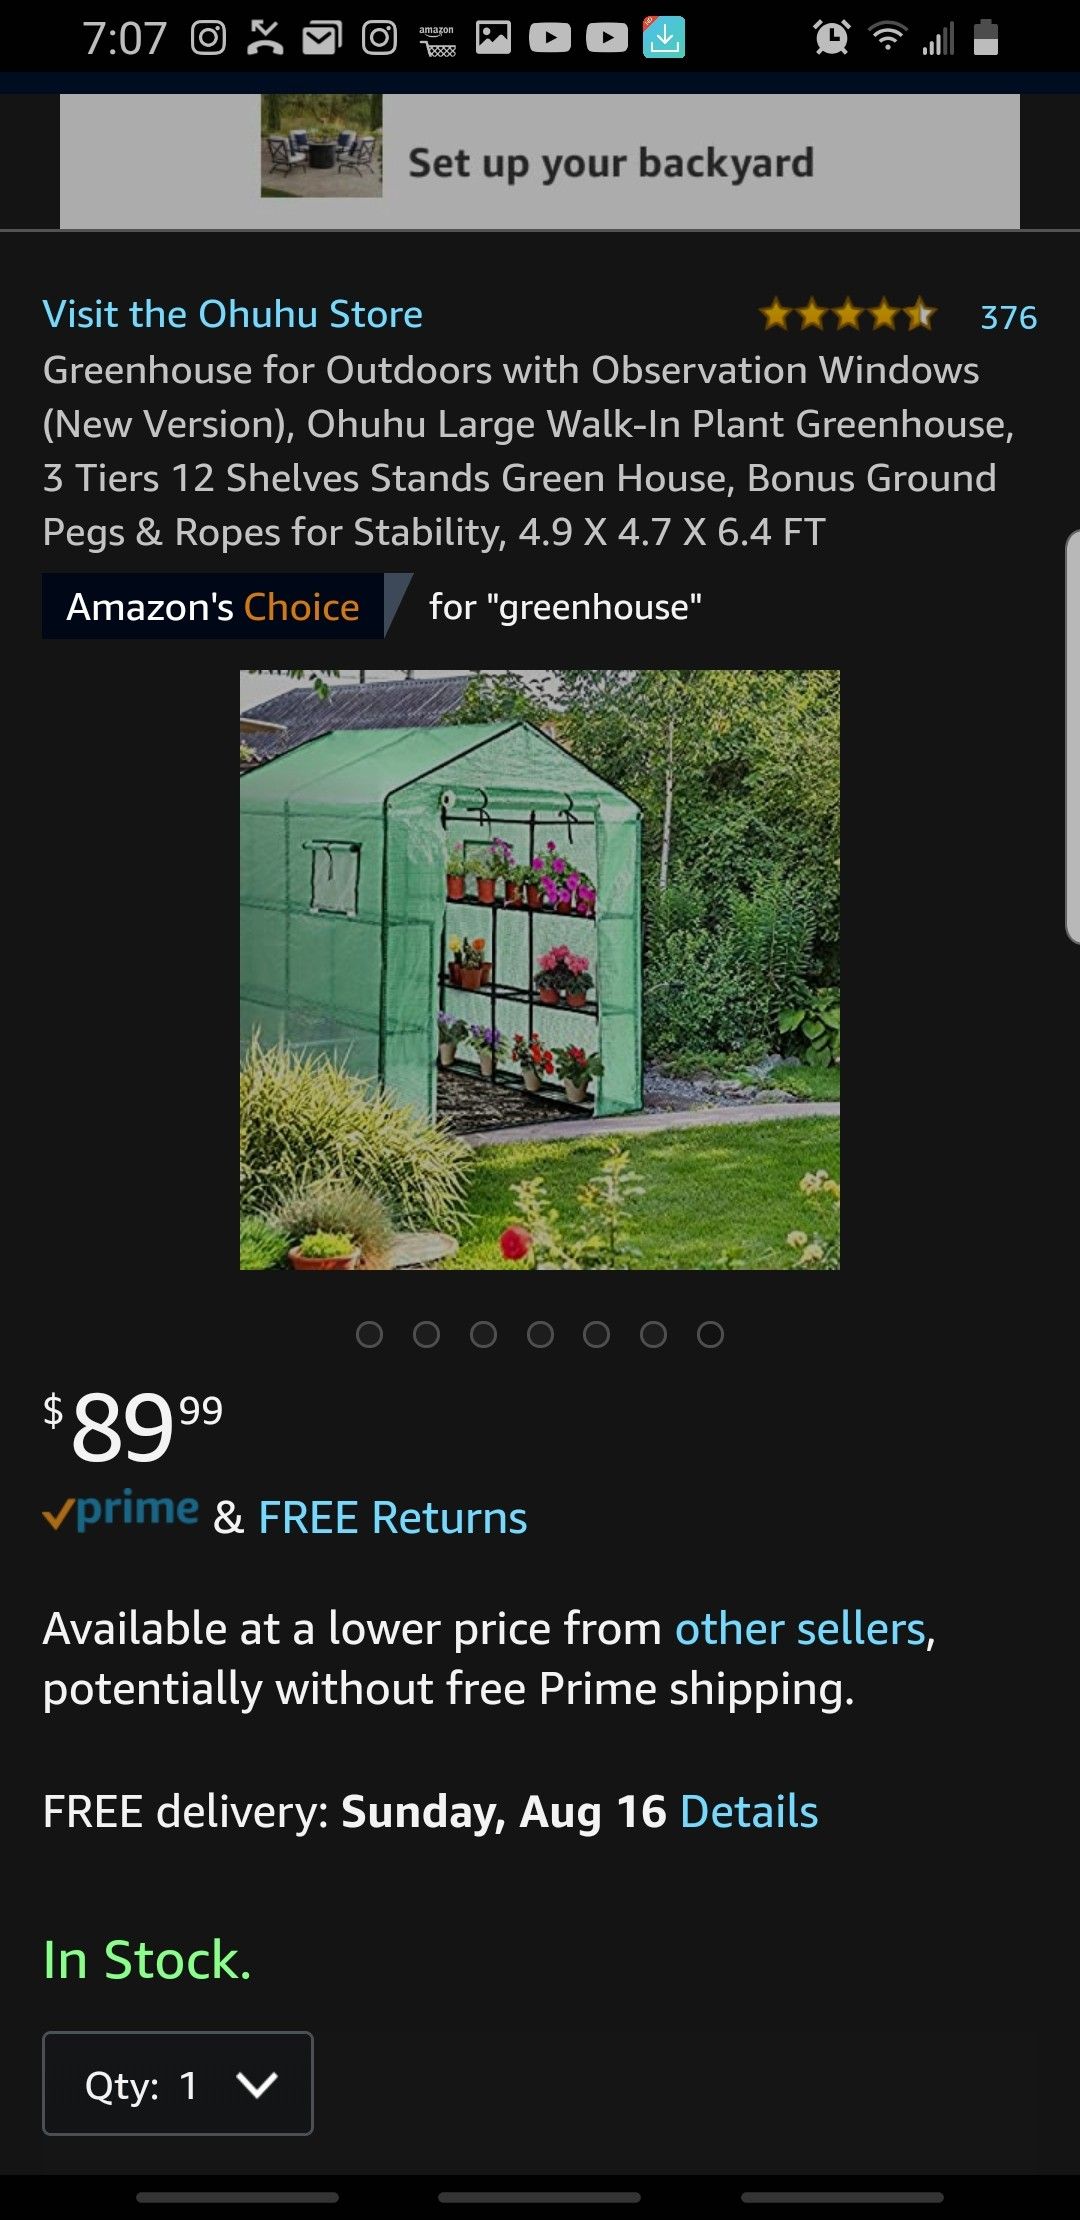 Green house invernadero o vivero